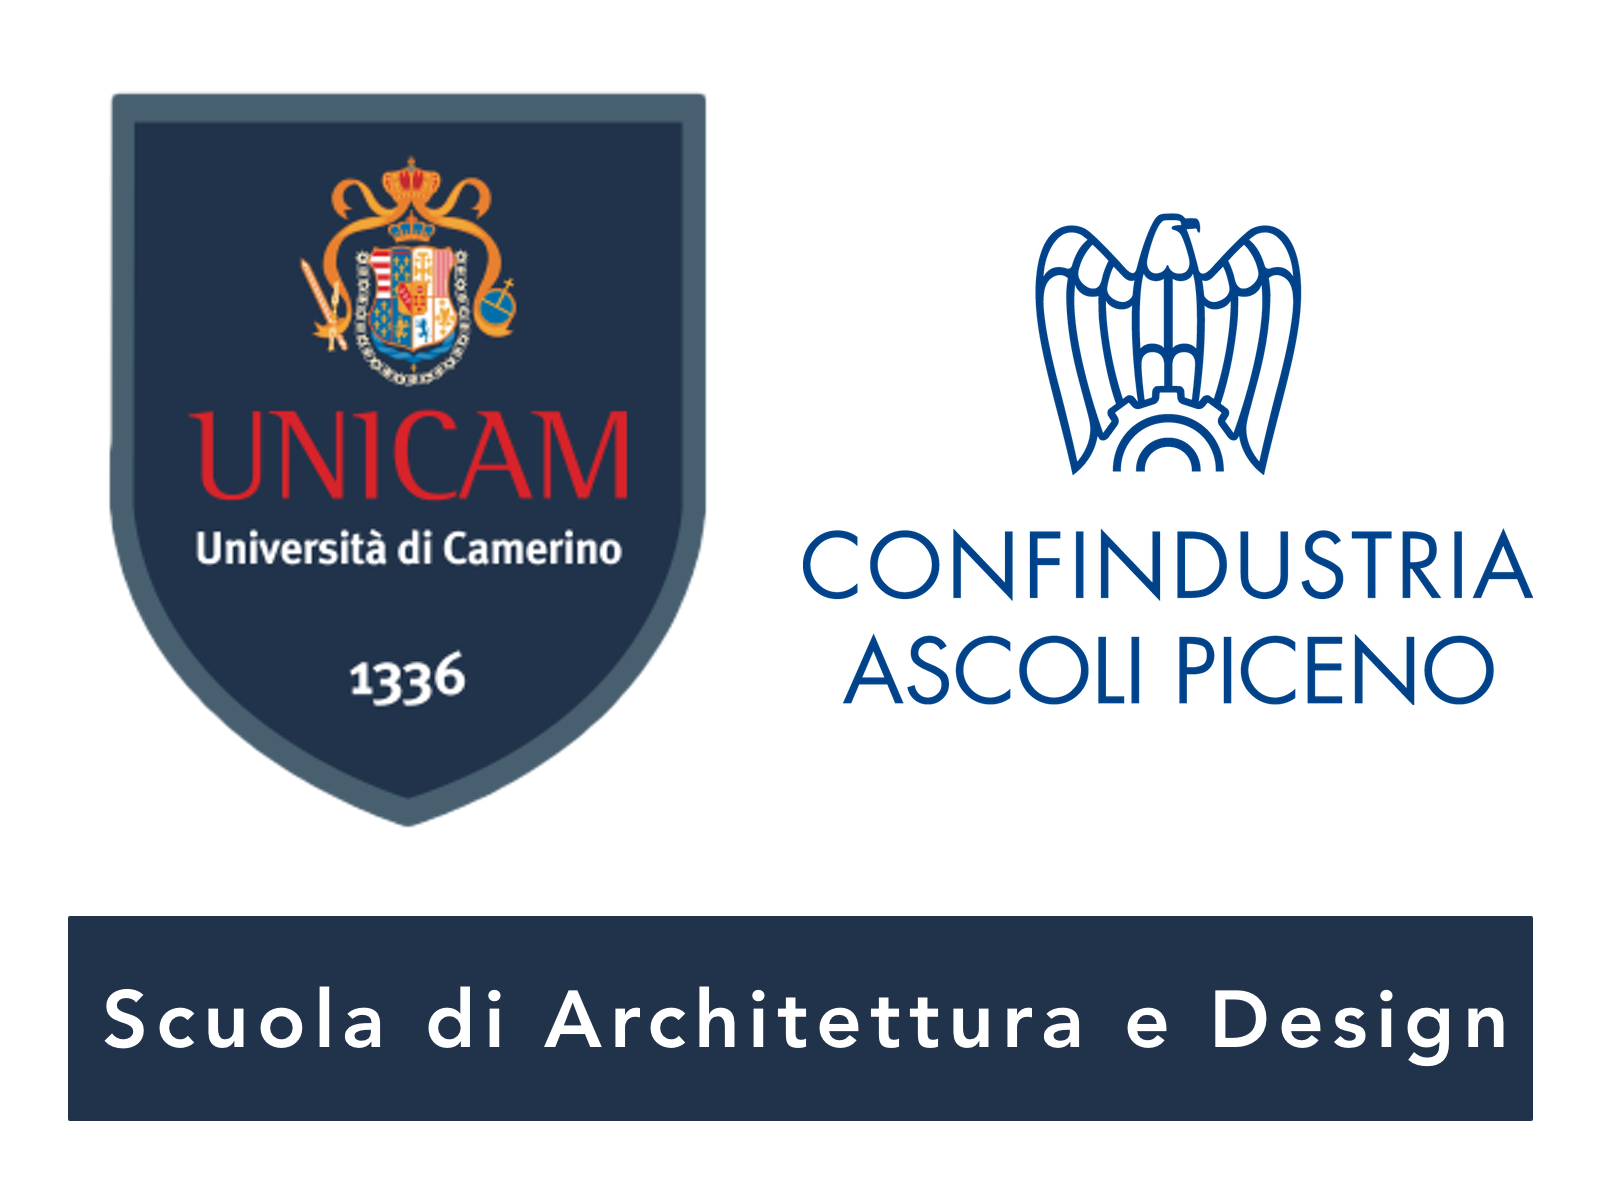 Logo Università degli studi di UNICAM e Confindustria Ascoli Piceno